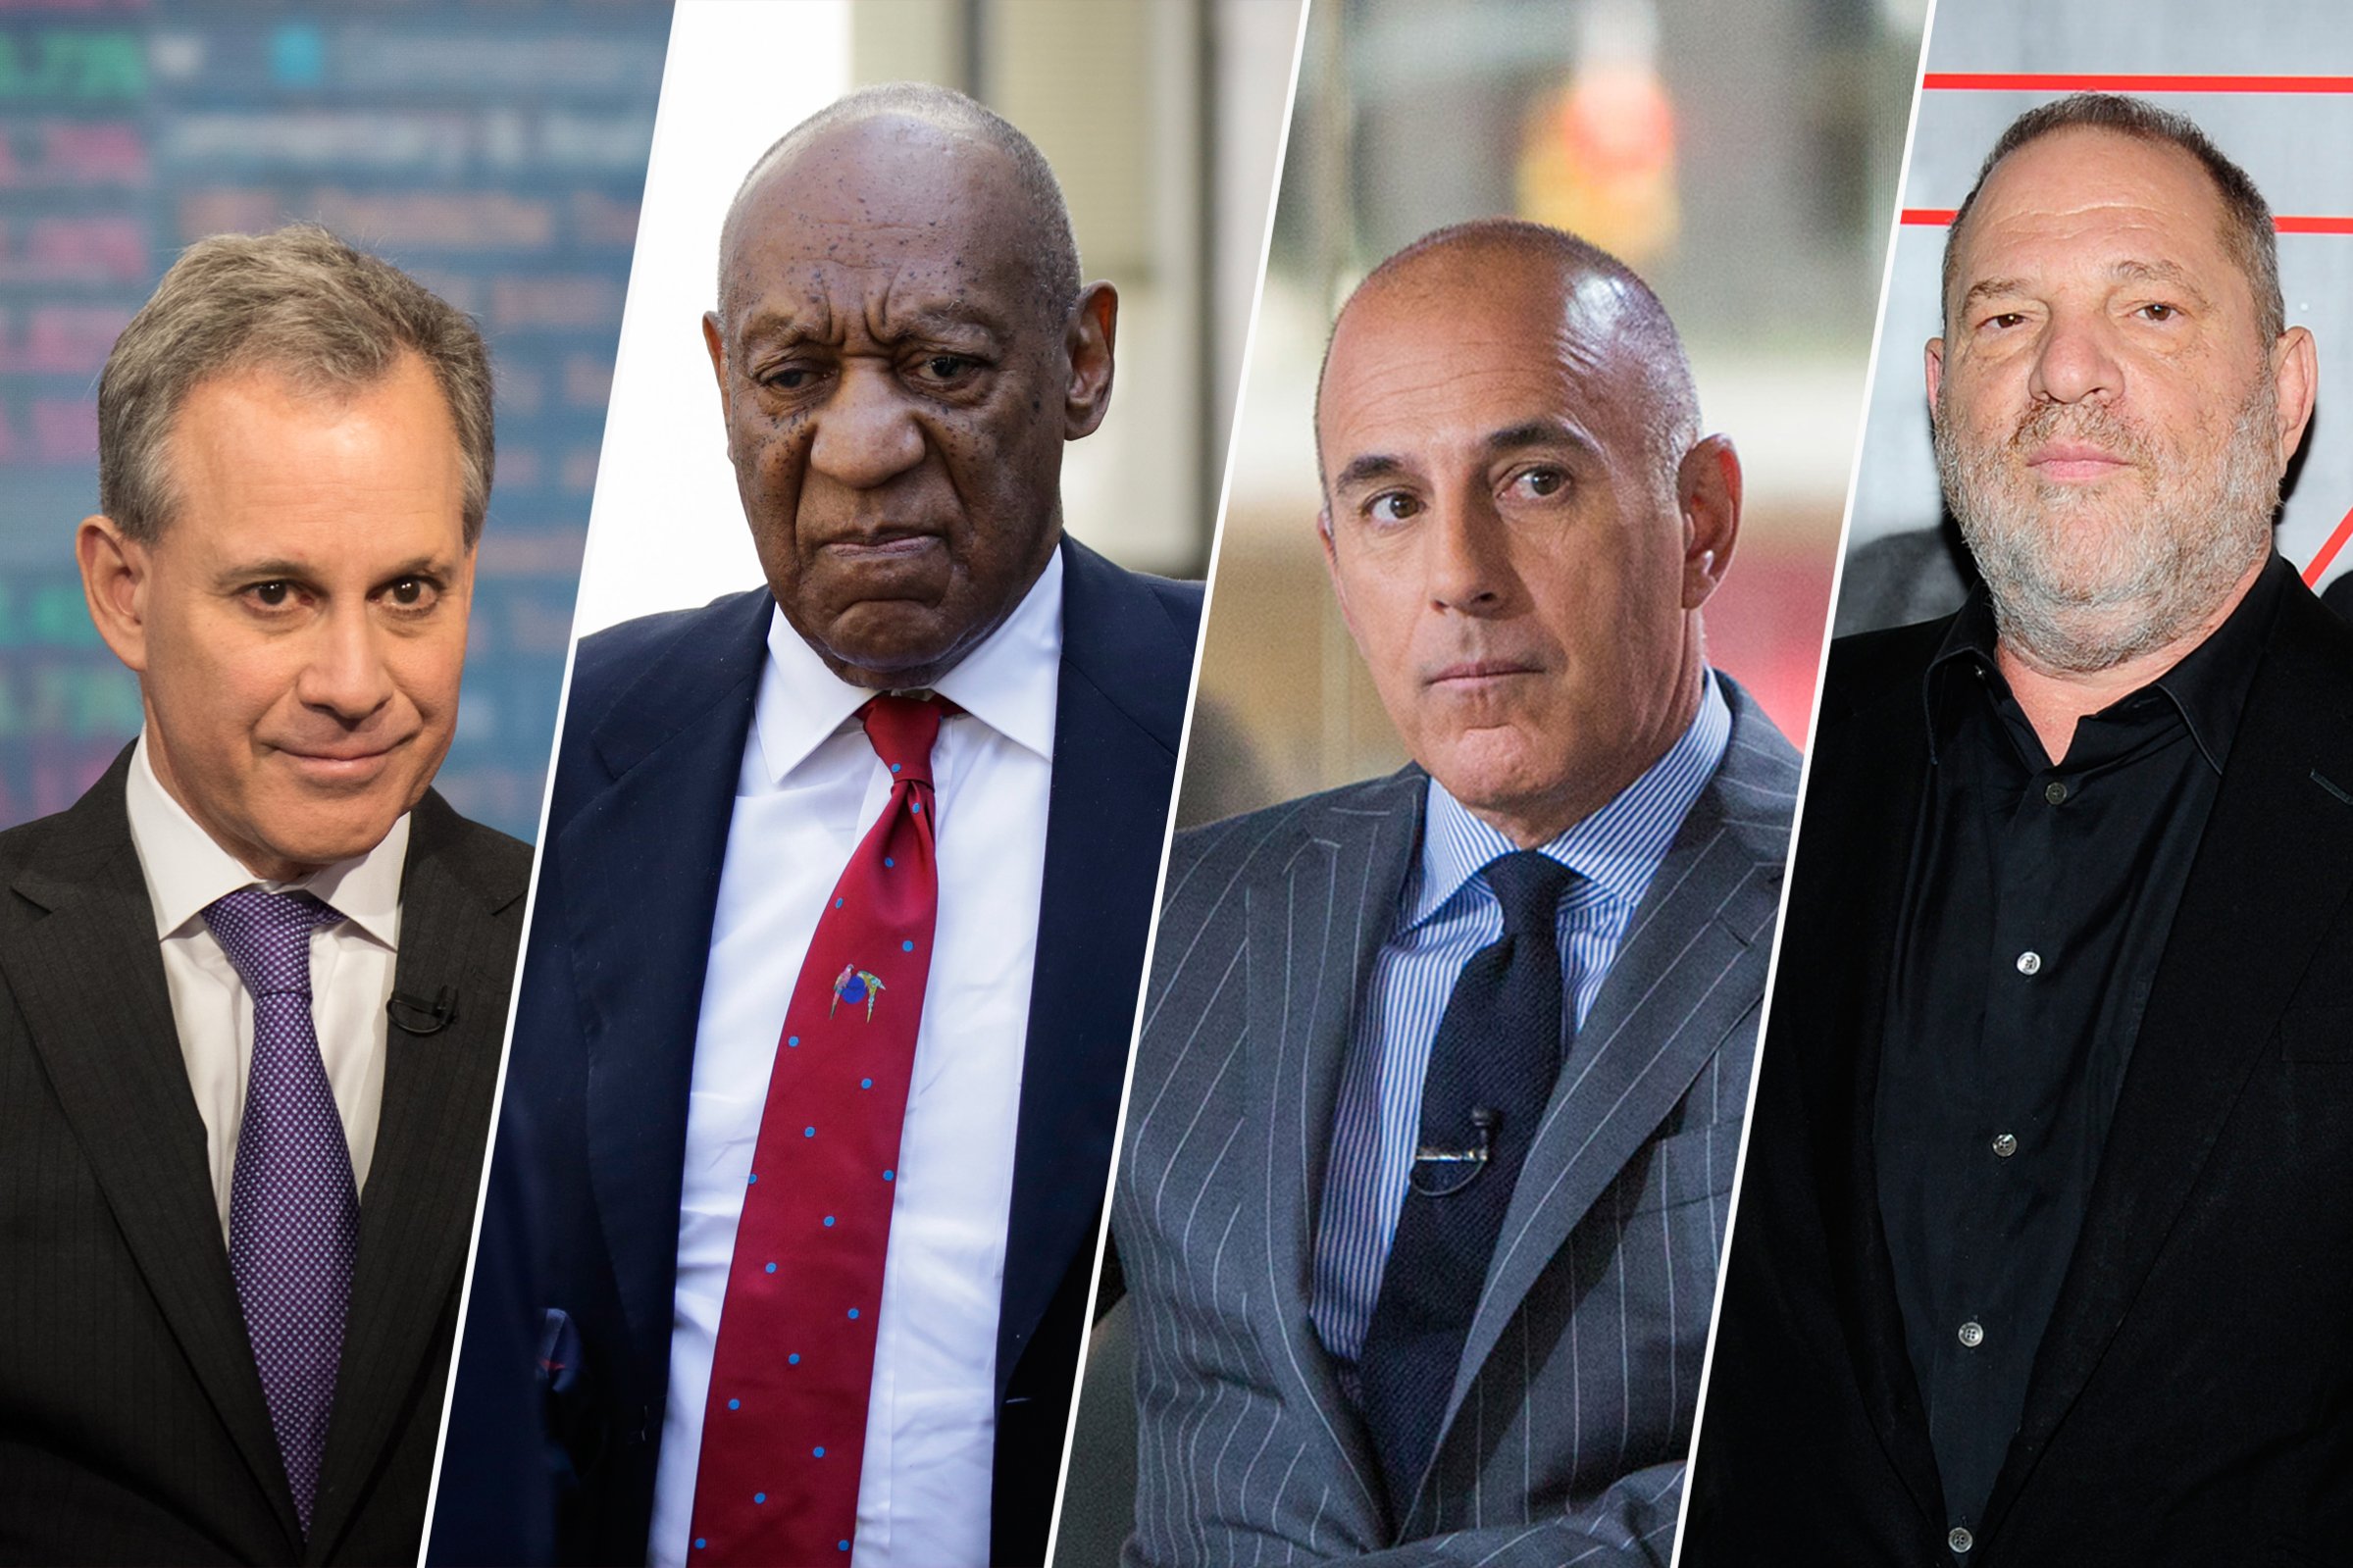 Eric Schneiderman, Bill Cosby, Matt Lauer, Harvey Weinstein